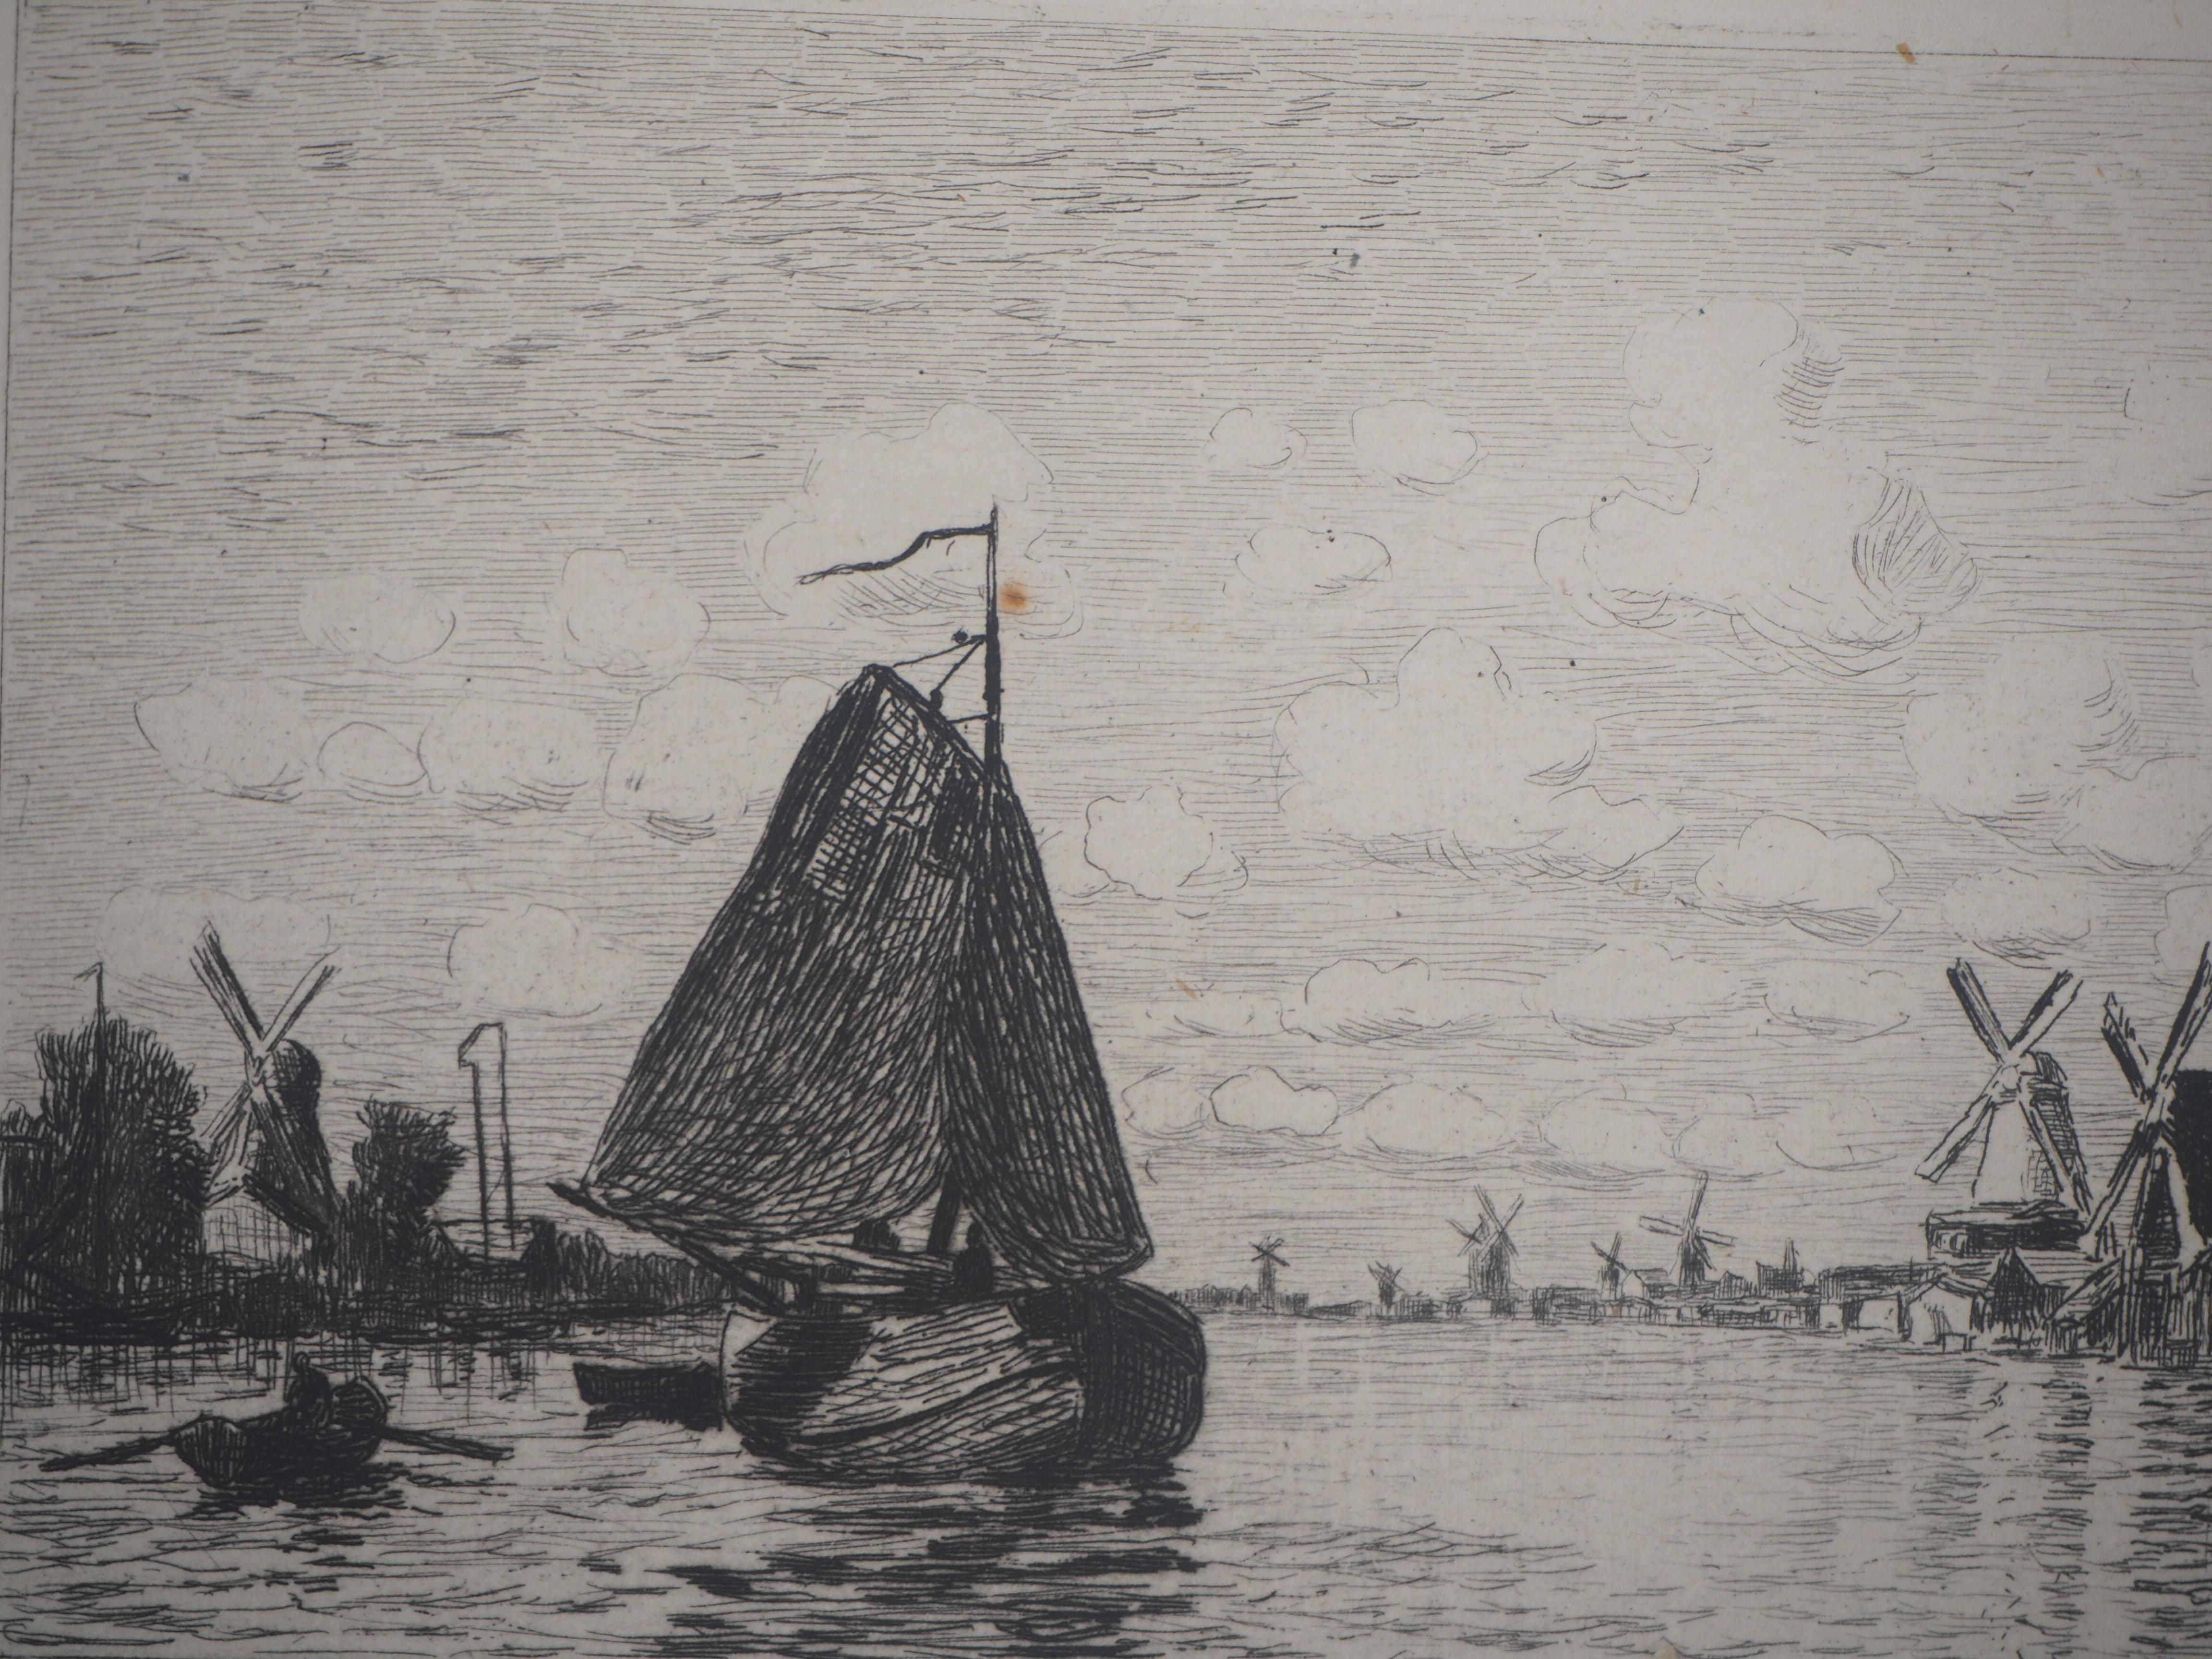 Claude MONET (nach)
Windmühlen in Holland, 1873

Original-Radierung
Gestochen von Gaucherel unter der Aufsicht von Monet
Gedruckte Unterschrift in der Platte (mit falsch geschriebener Unterschrift Monnet)
Auf Büttenpapier 20,5 x 30 cm (ca. 8 x 12